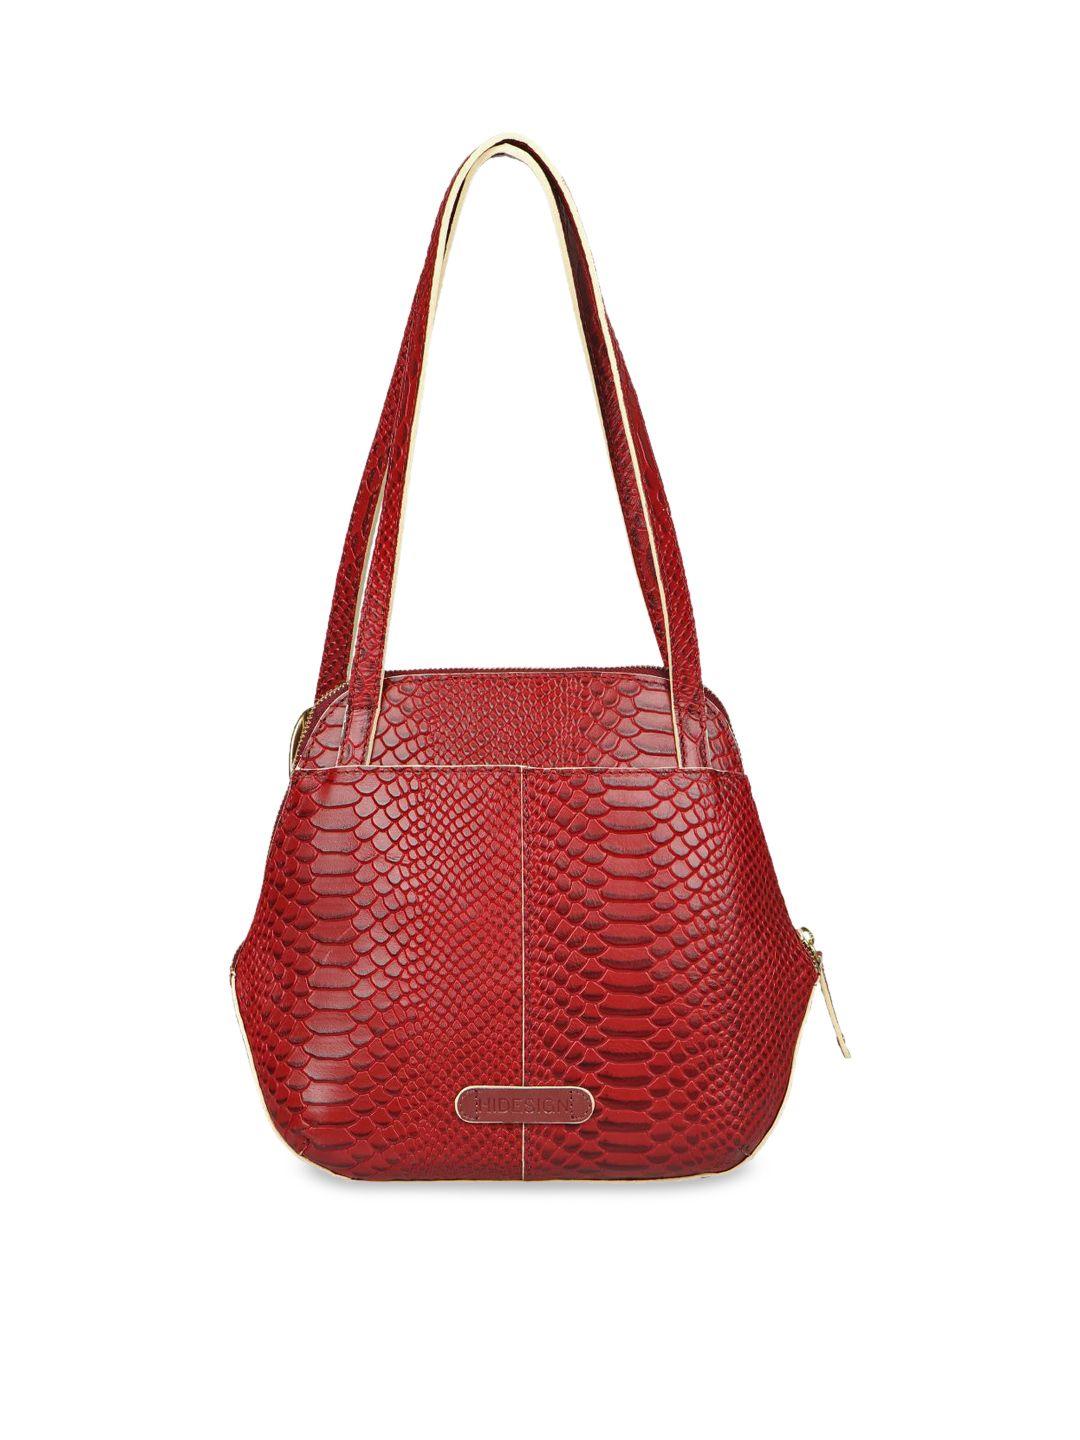 hidesign red textured leather structured shoulder bag